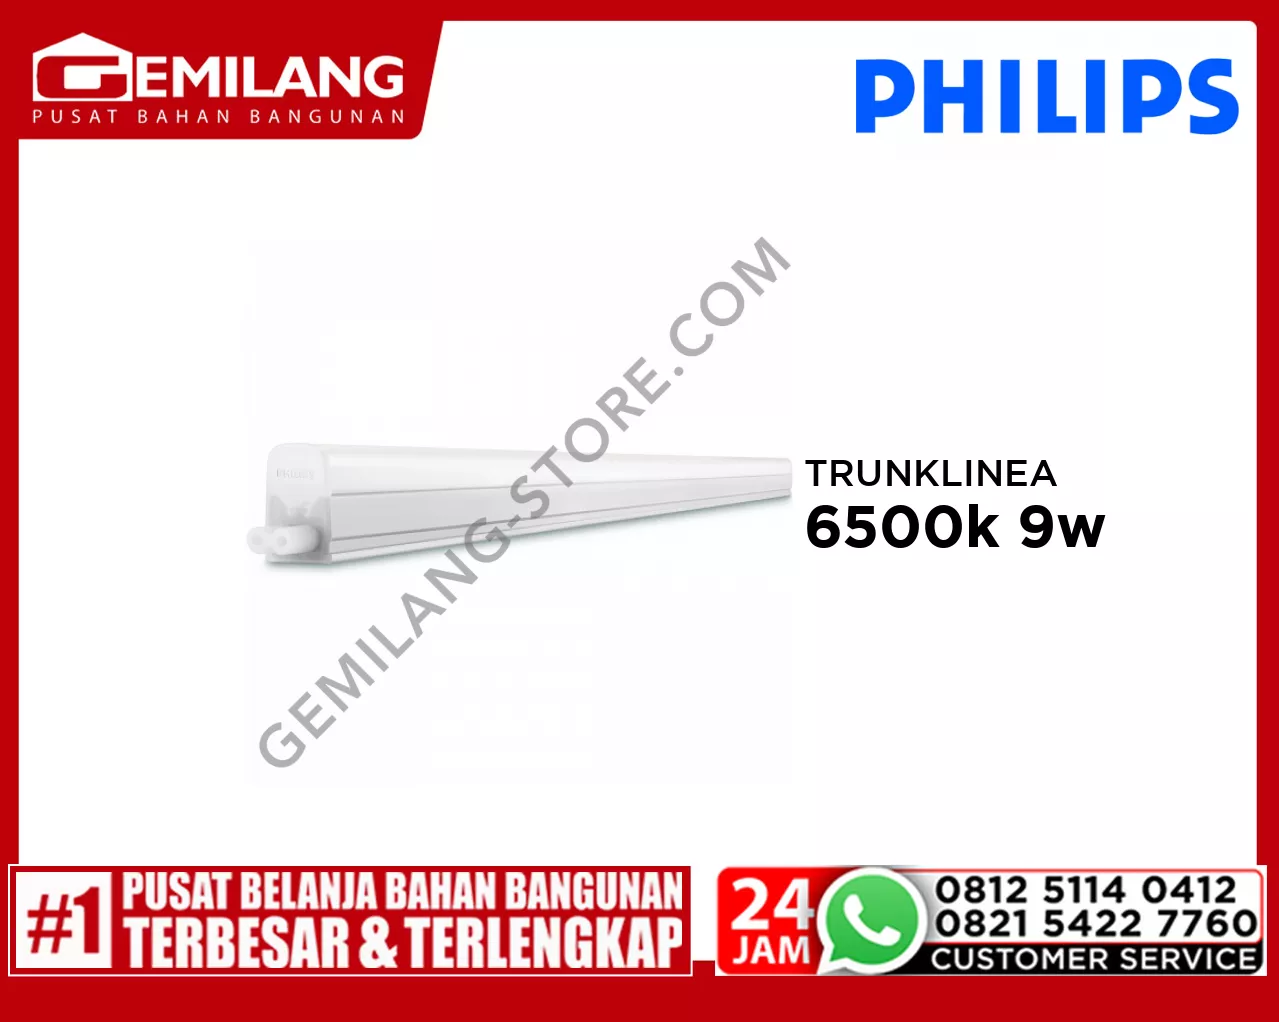 PHILIPS TRUNKLINEA WALL LAMP 6500k 9w 31085